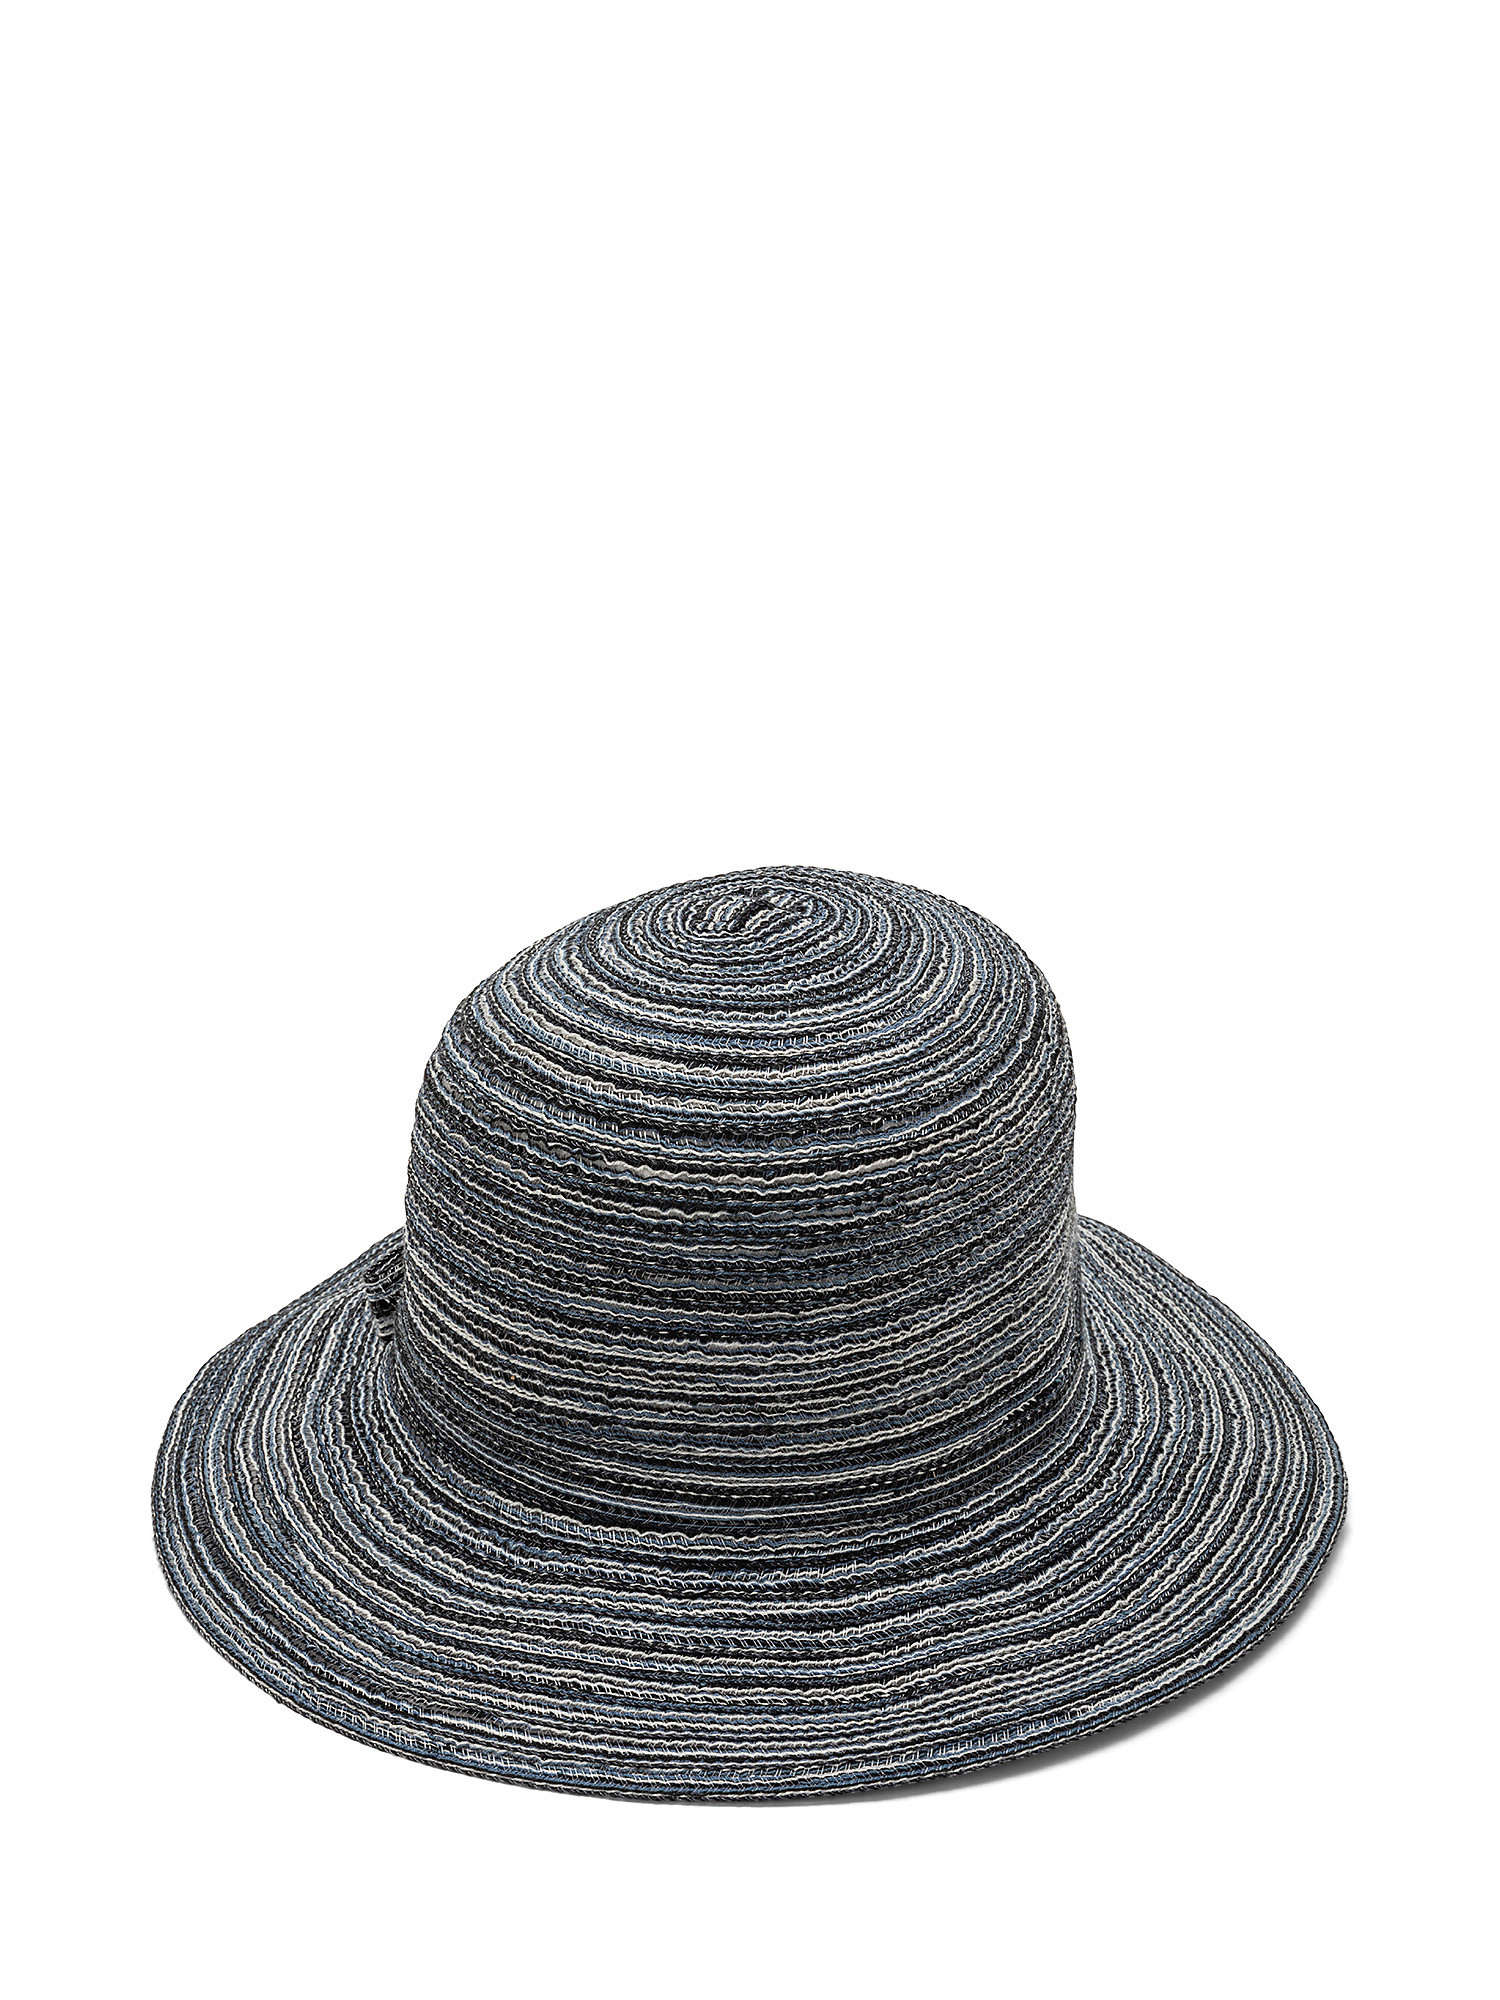 Multi-line knit hat, Blue, large image number 0